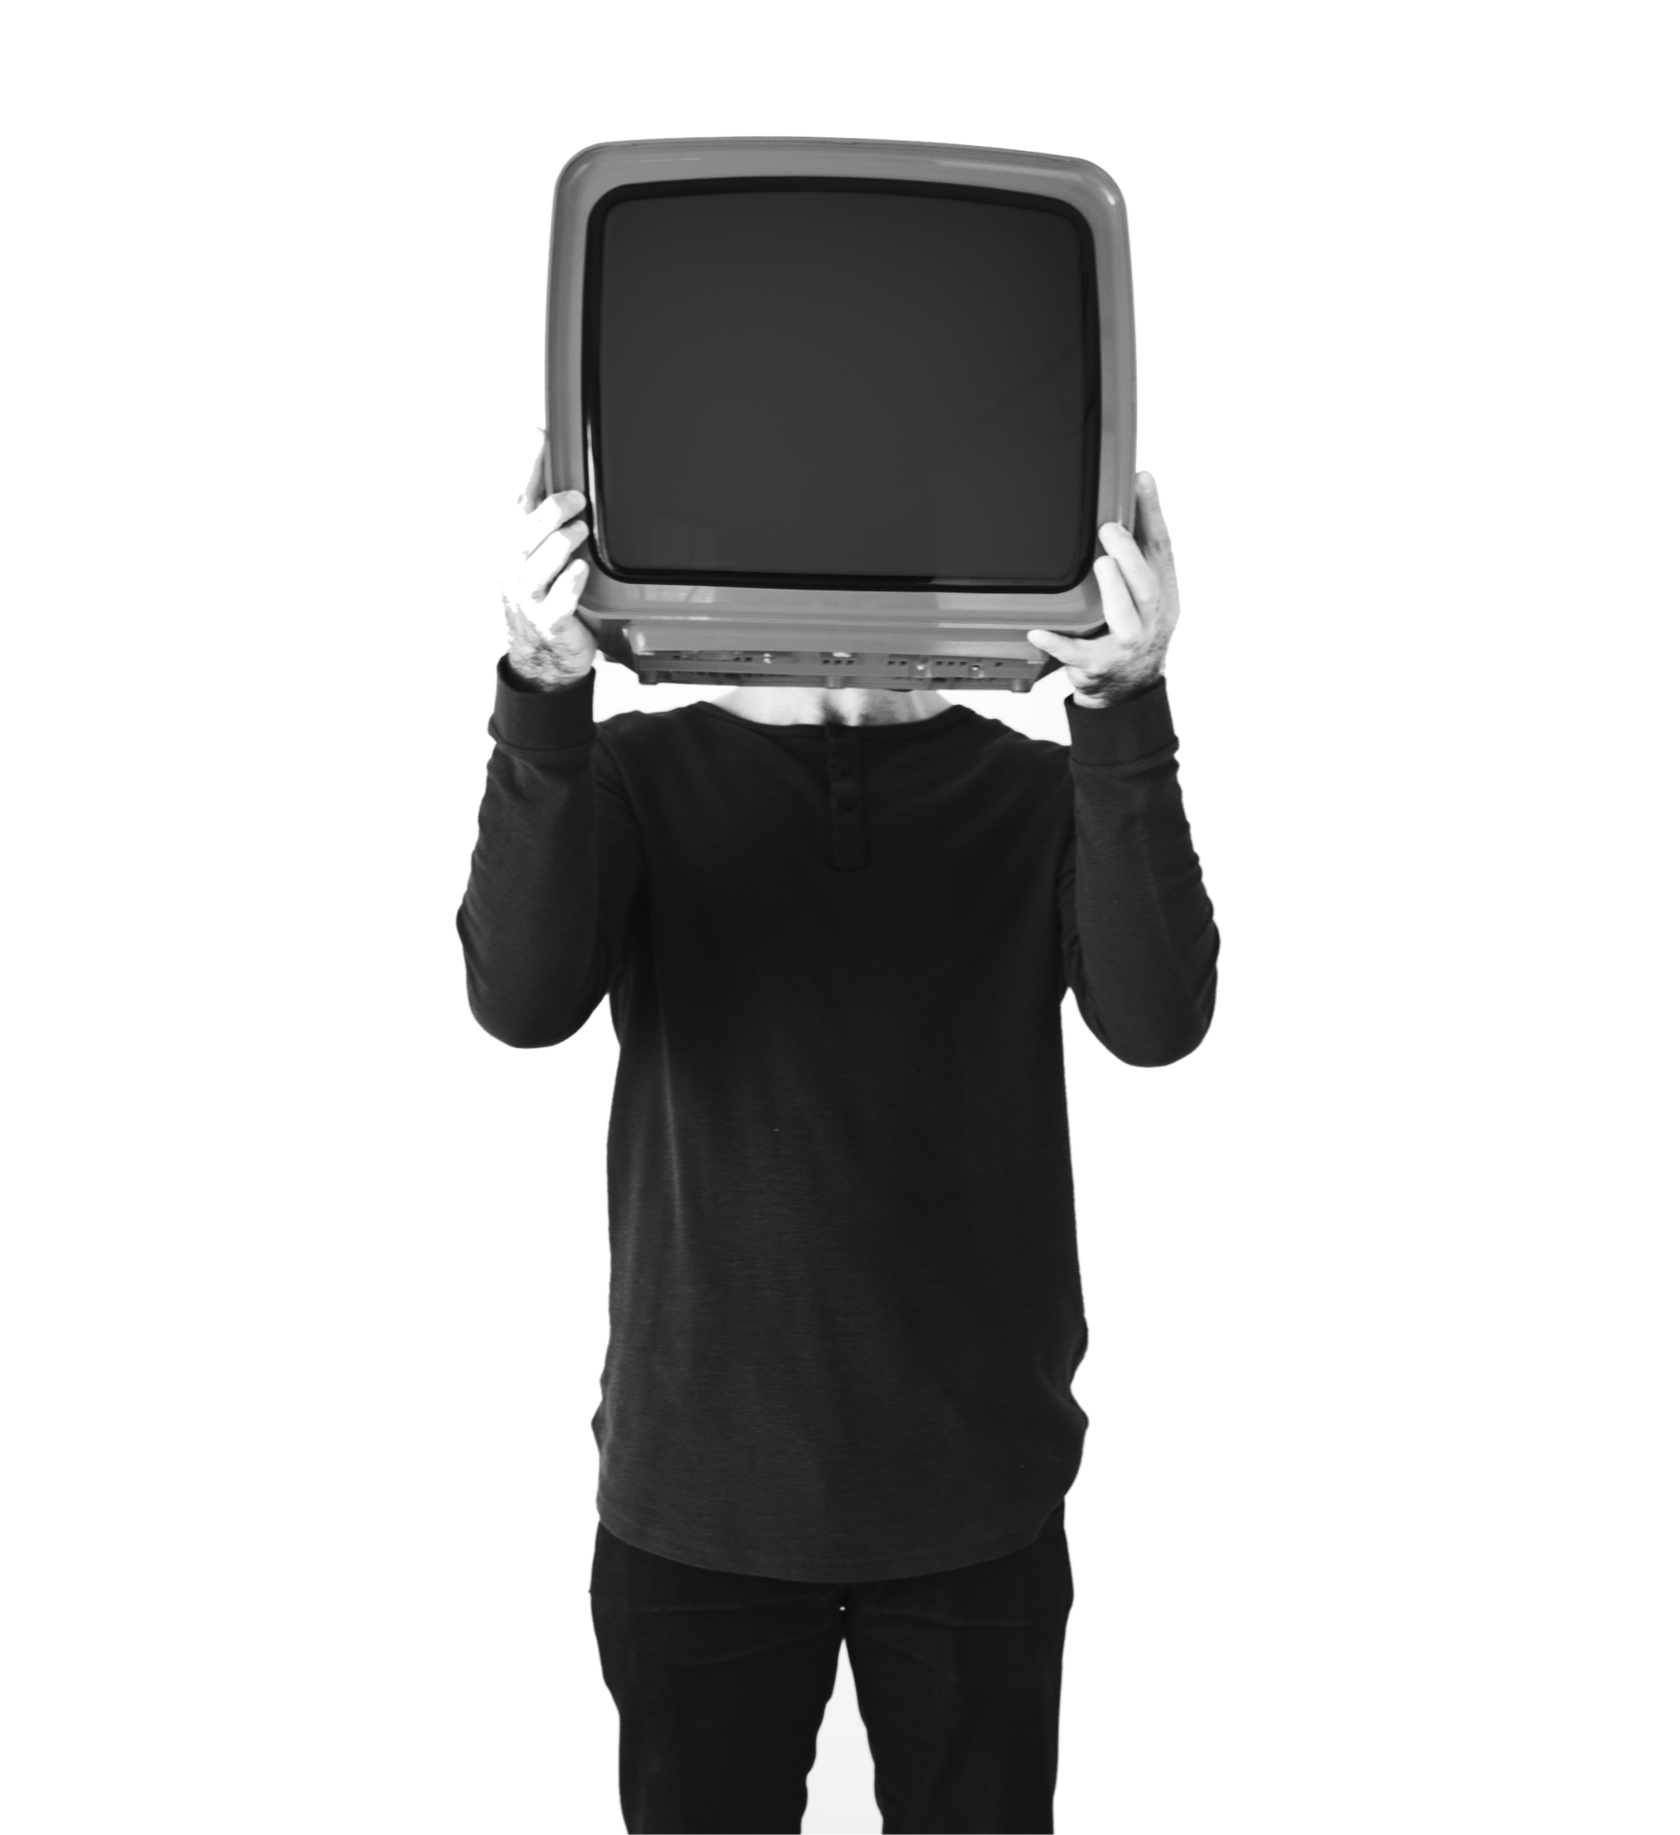 Телевизор вместо головы. Человек телевизор. Человек держит телевизор. Мужчина с телевизором в руках. Фотку тв мена 3.0